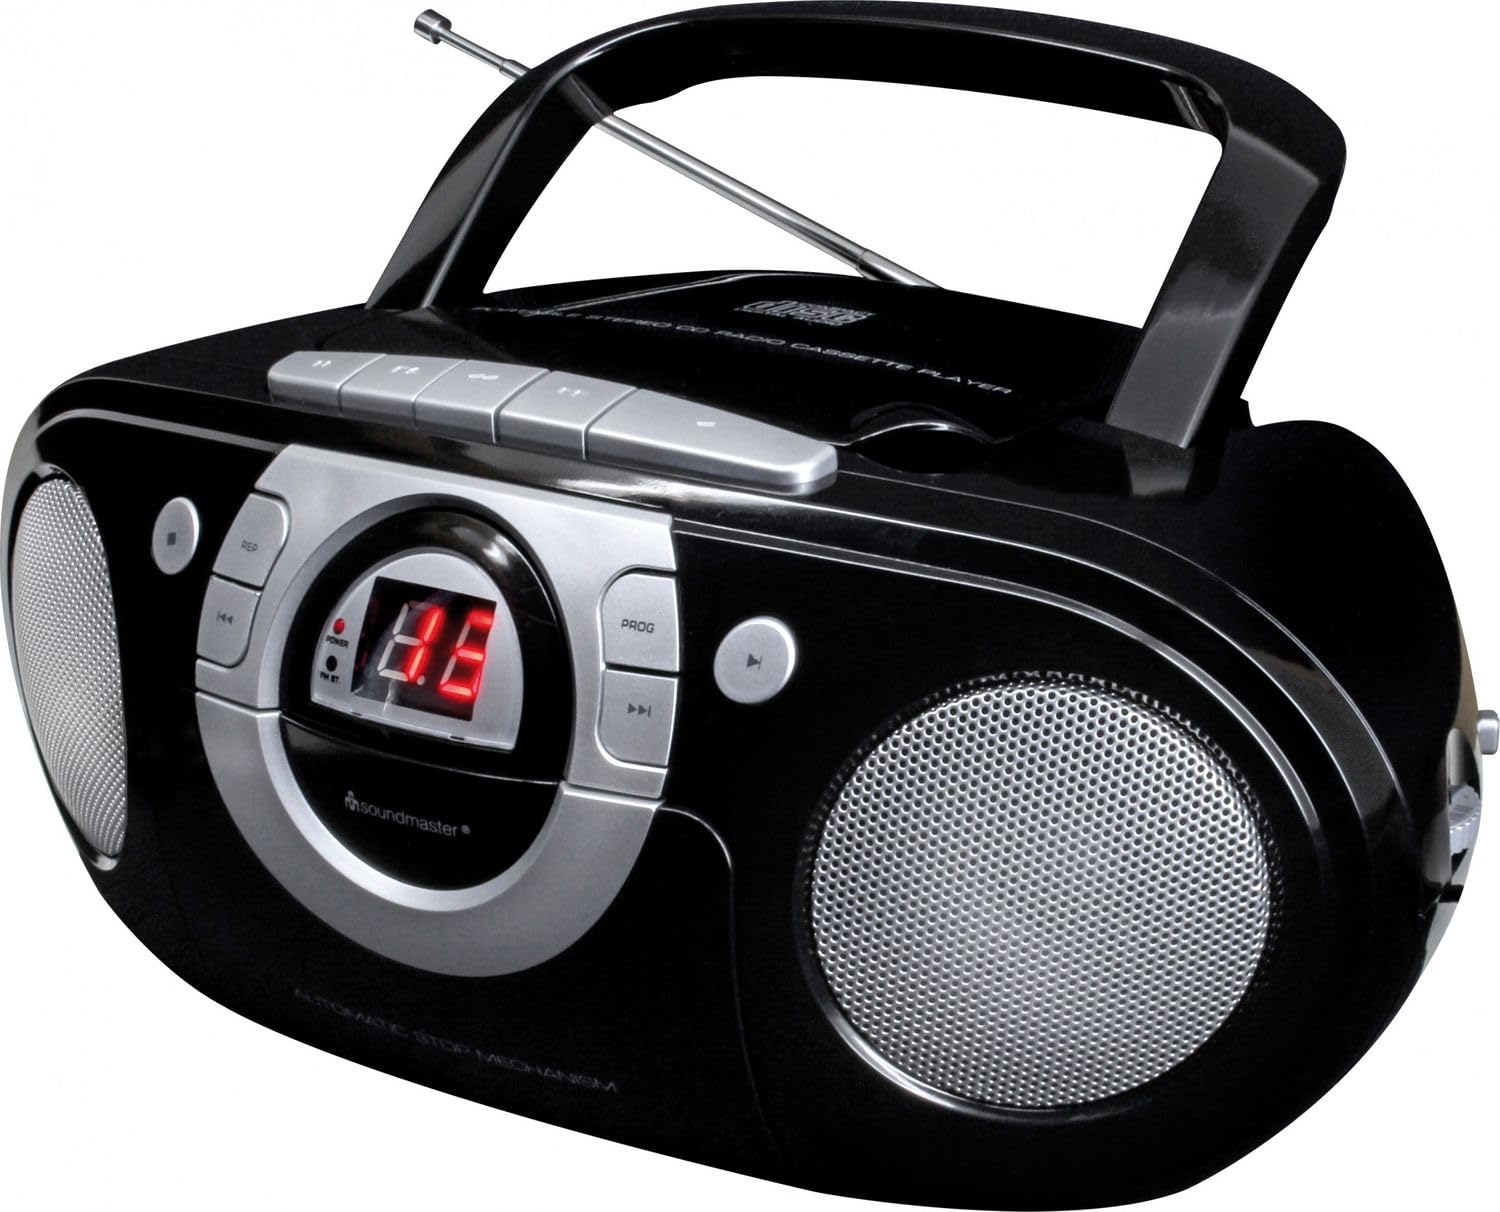 Soundmaster SCD5100SW Radio Kassettenspieler mit CD Spieler in schwarz